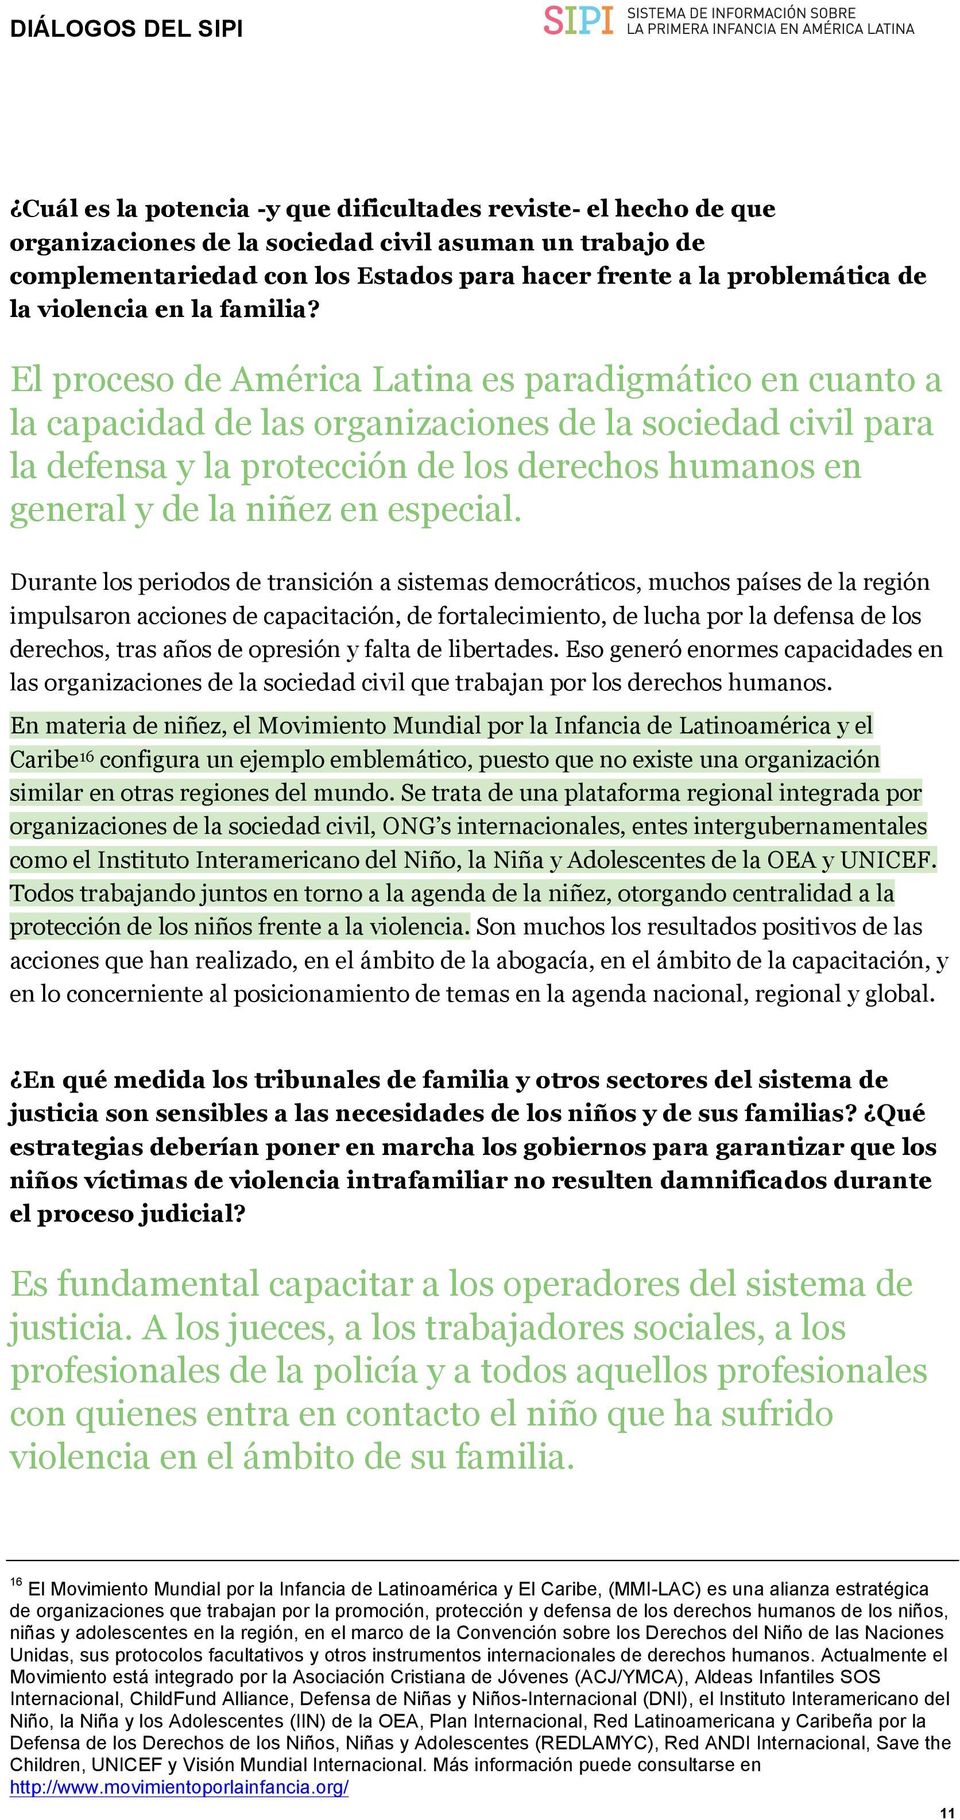 El proceso de América Latina es paradigmático en cuanto a la capacidad de las organizaciones de la sociedad civil para la defensa y la protección de los derechos humanos en general y de la niñez en